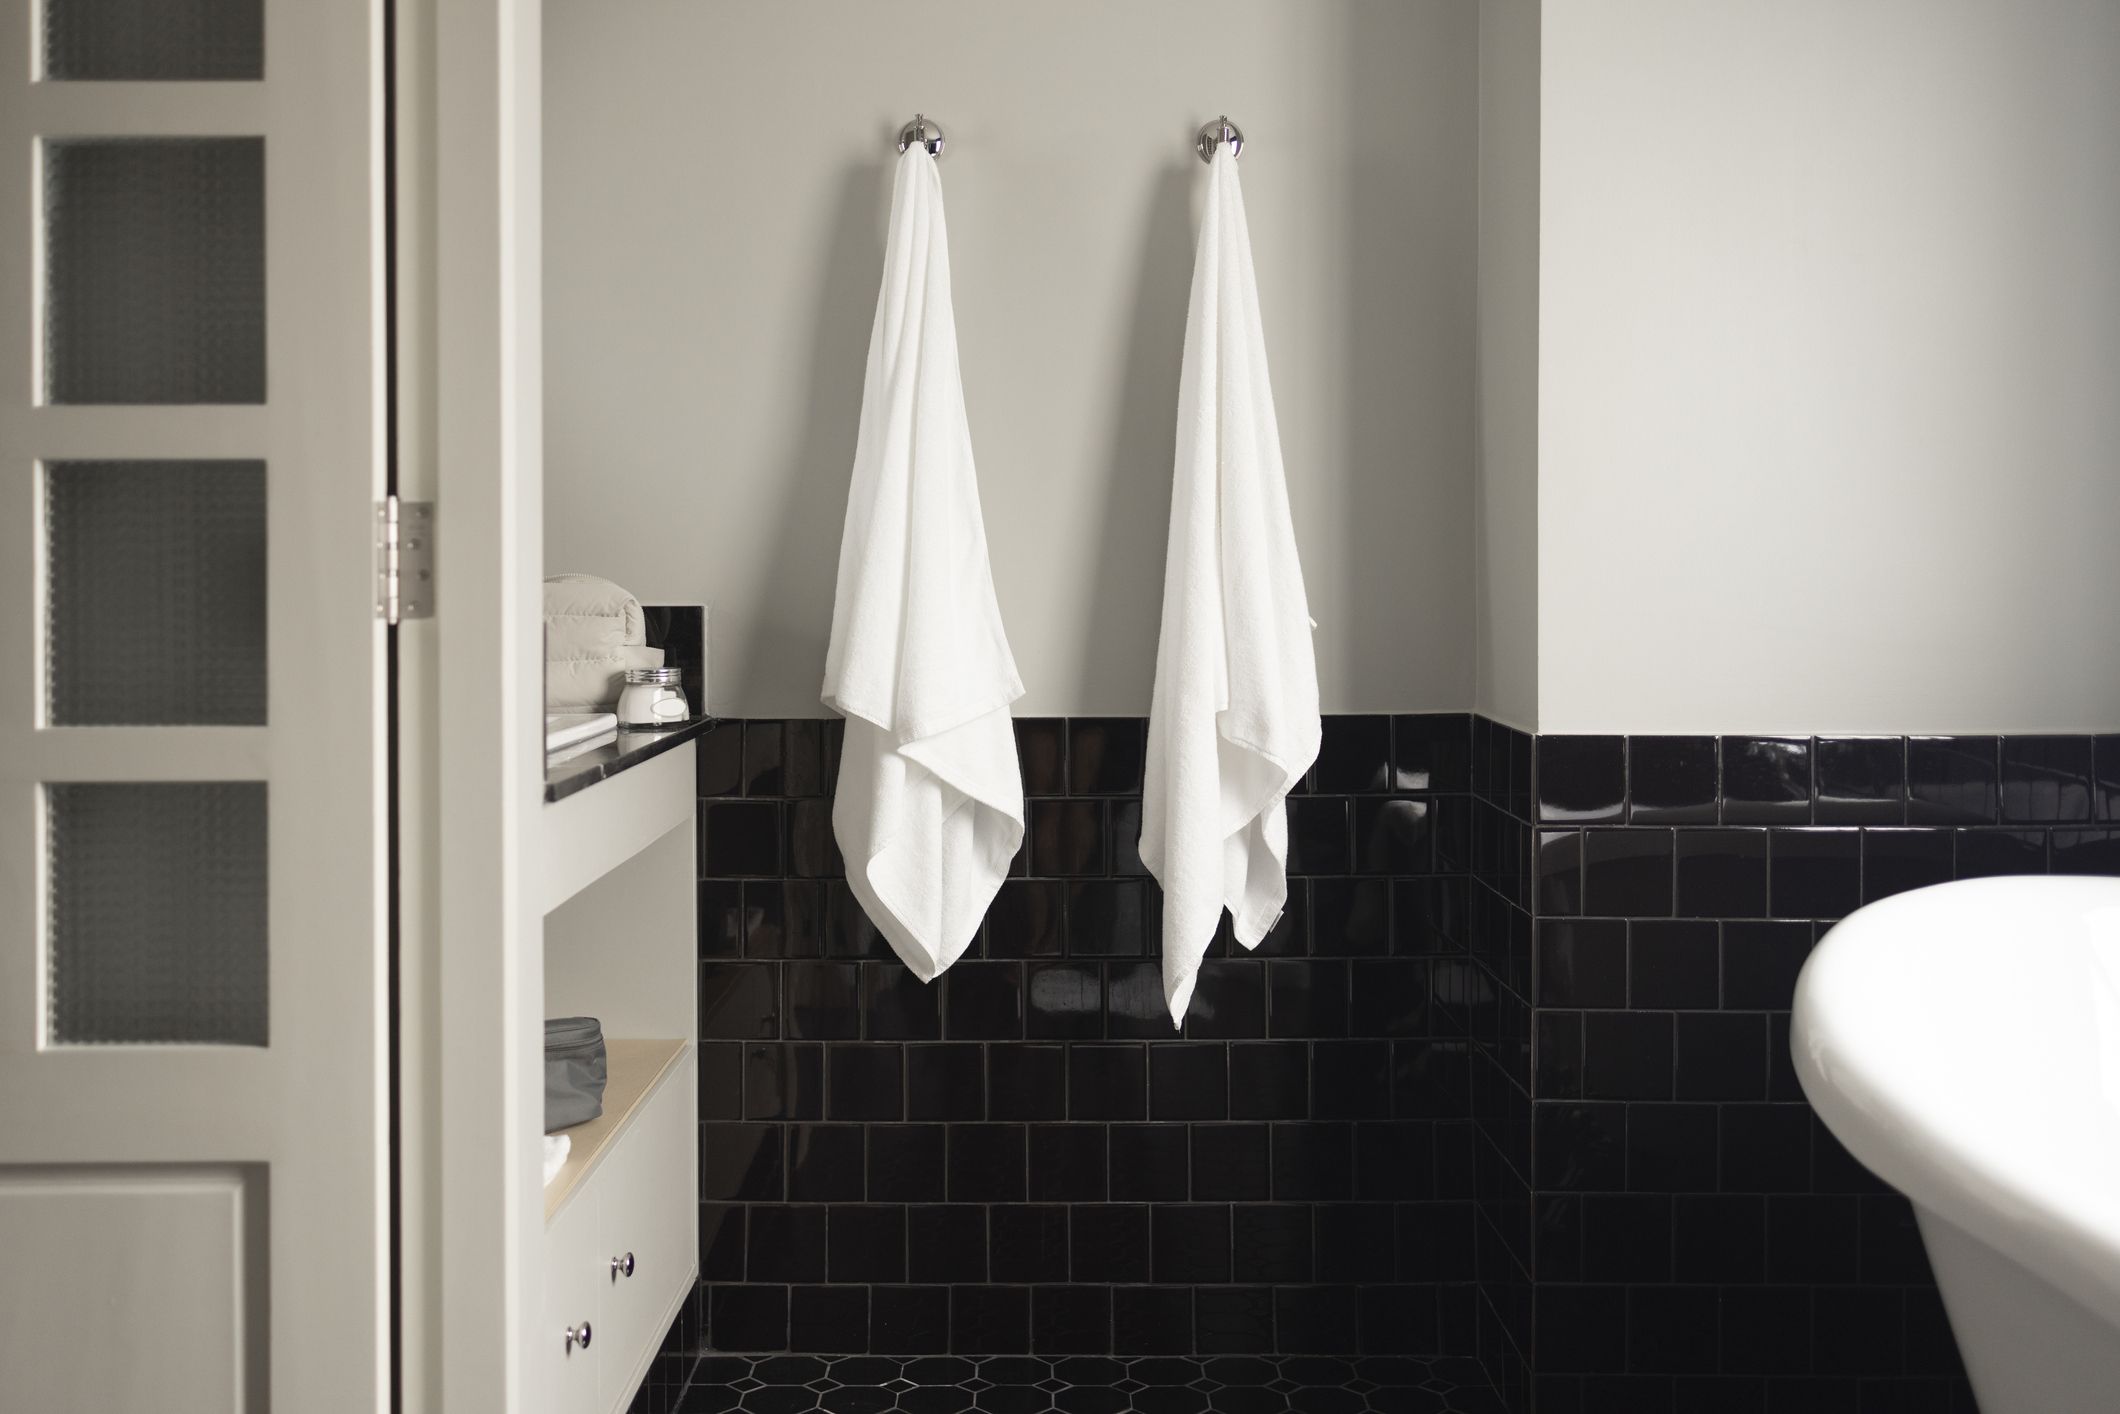 30 Best Bathroom Organization Ideas